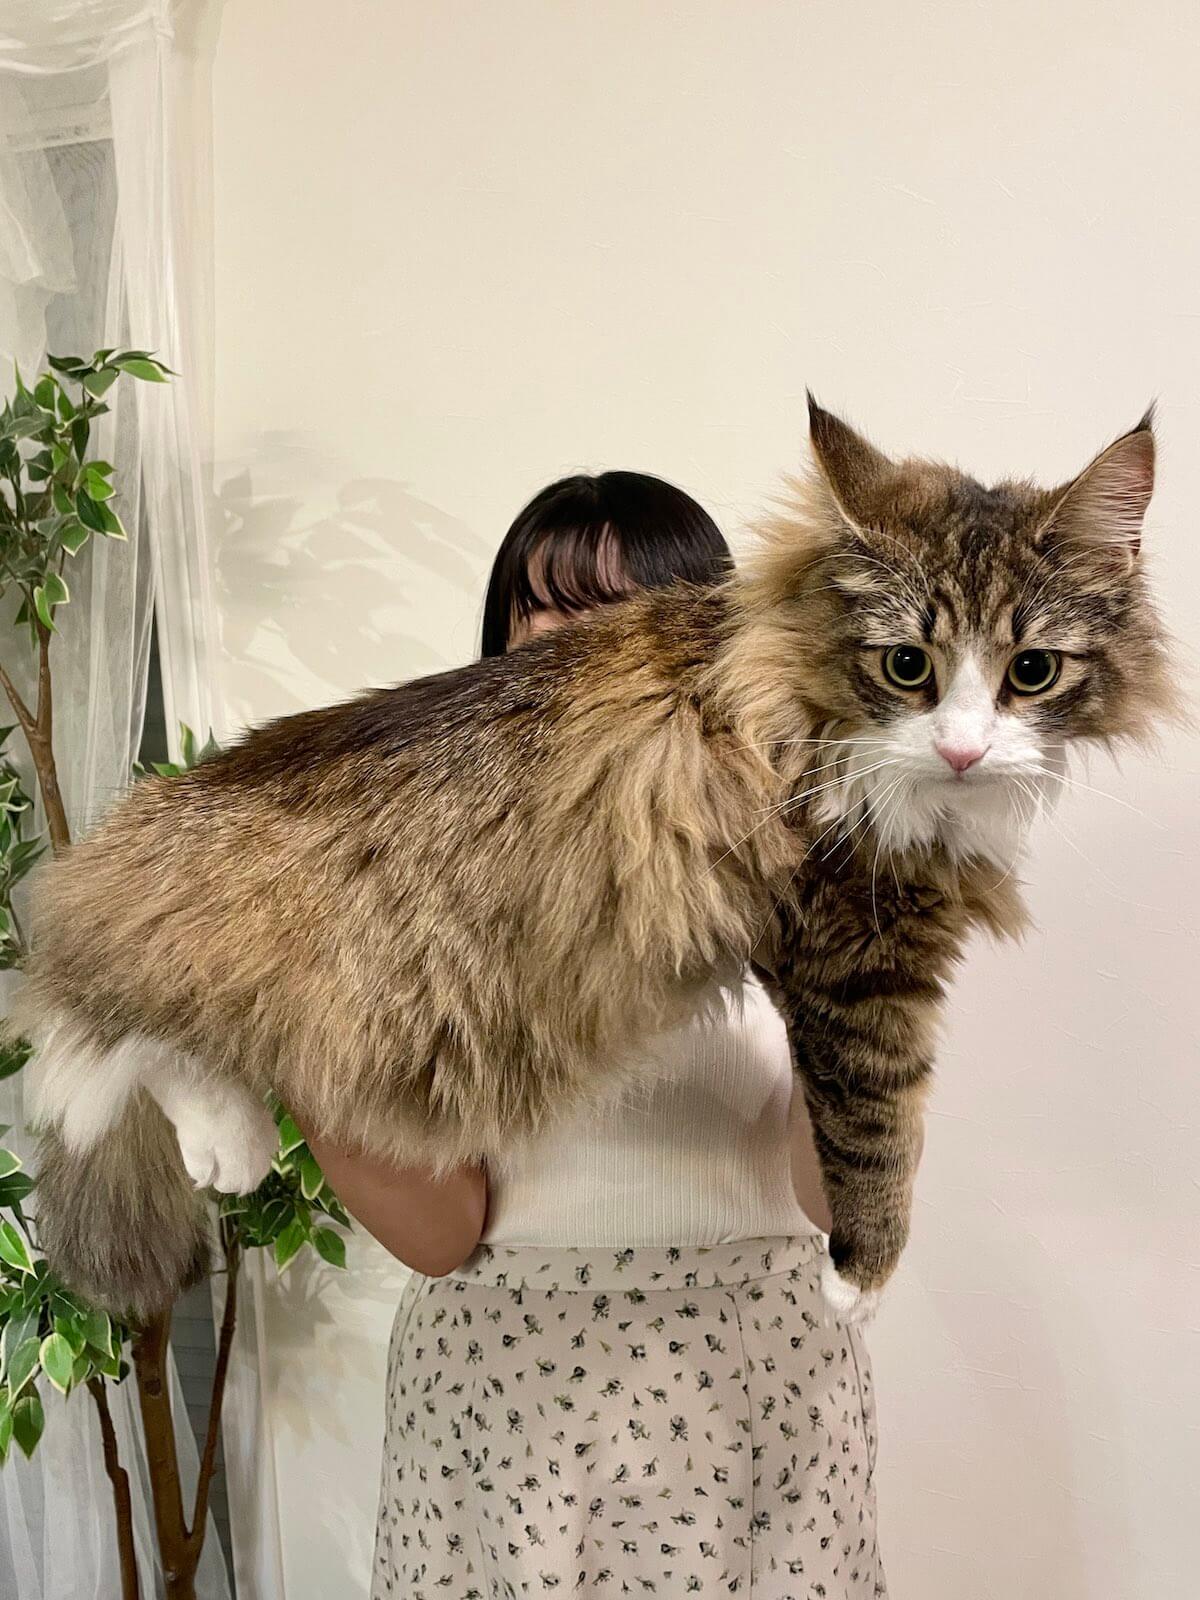 抱っこされたデカすぎる巨大猫・ノルウェージャンフォレストキャットの「しろあん」ちゃん